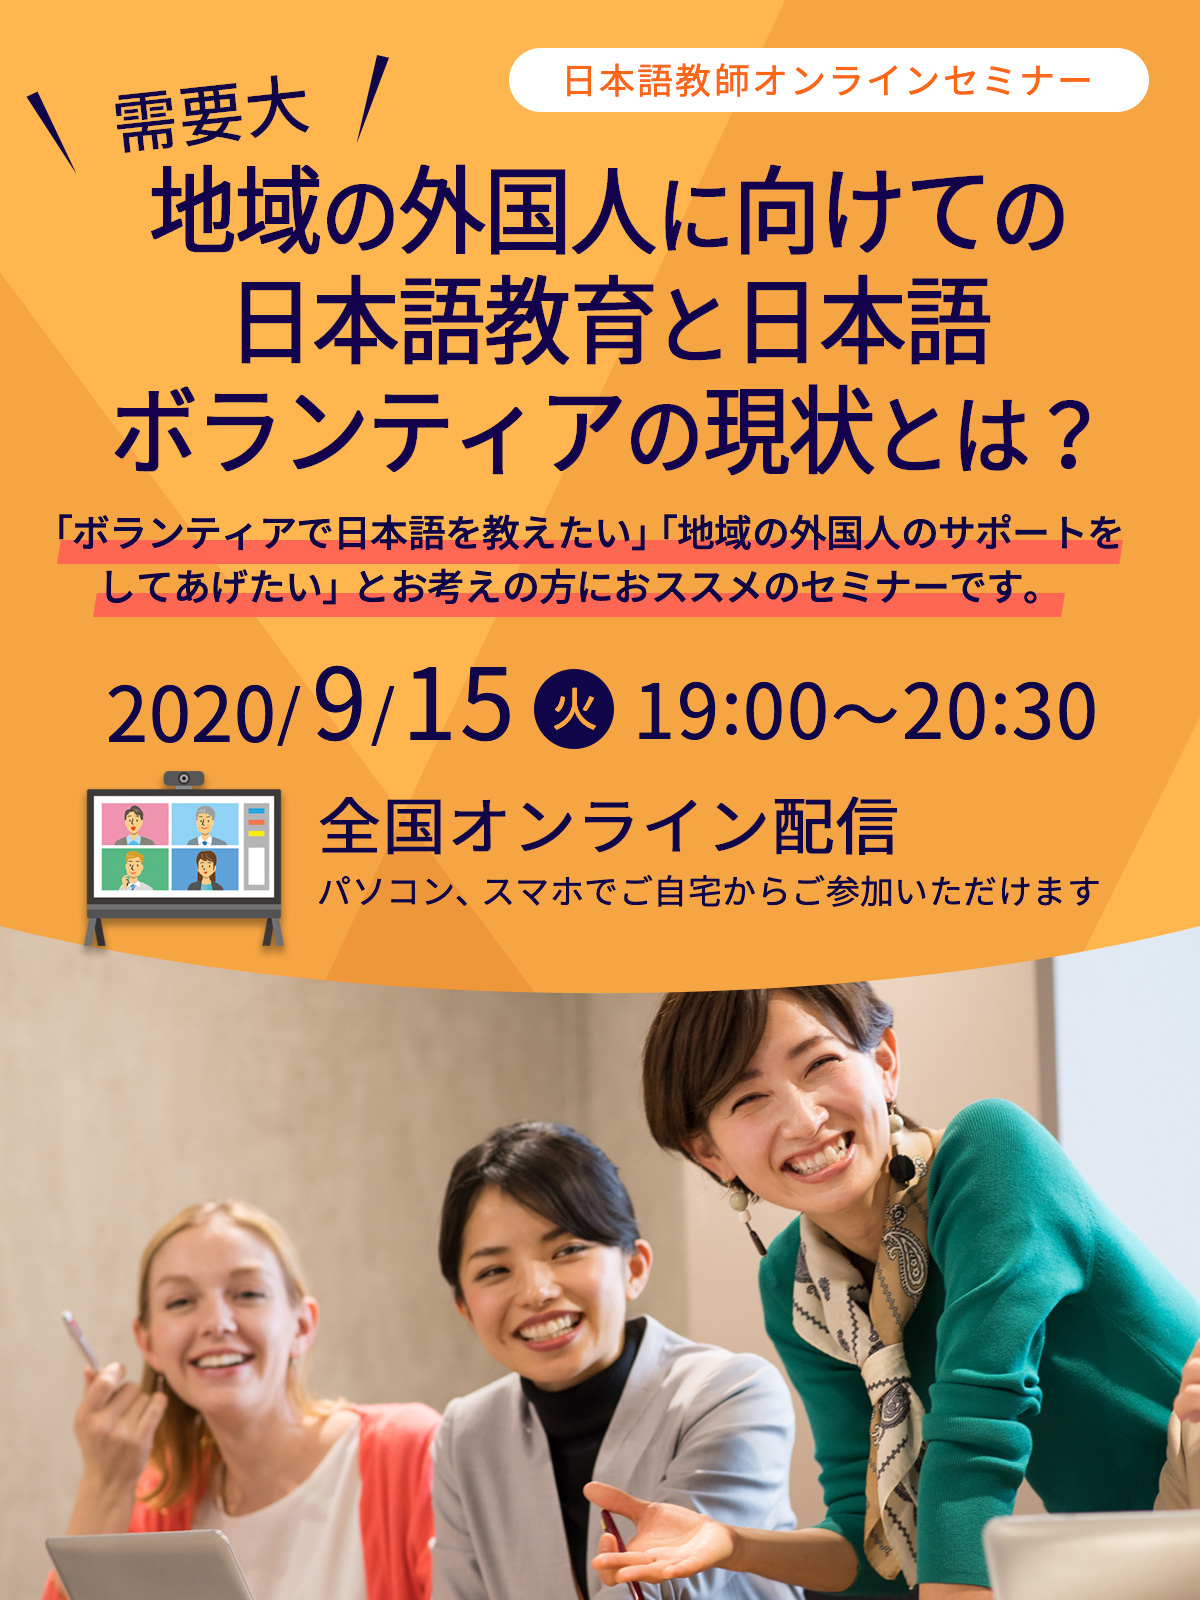 9/15開催 日本語教師オンラインセミナー【地域の外国人に向けての日本語教育と日本語ボランティアの現状とは？】「ボランティアで日本語を教えたい」「地域の外国人のサポートをしてあげたい」とお考えの方におススメのセミナーです。